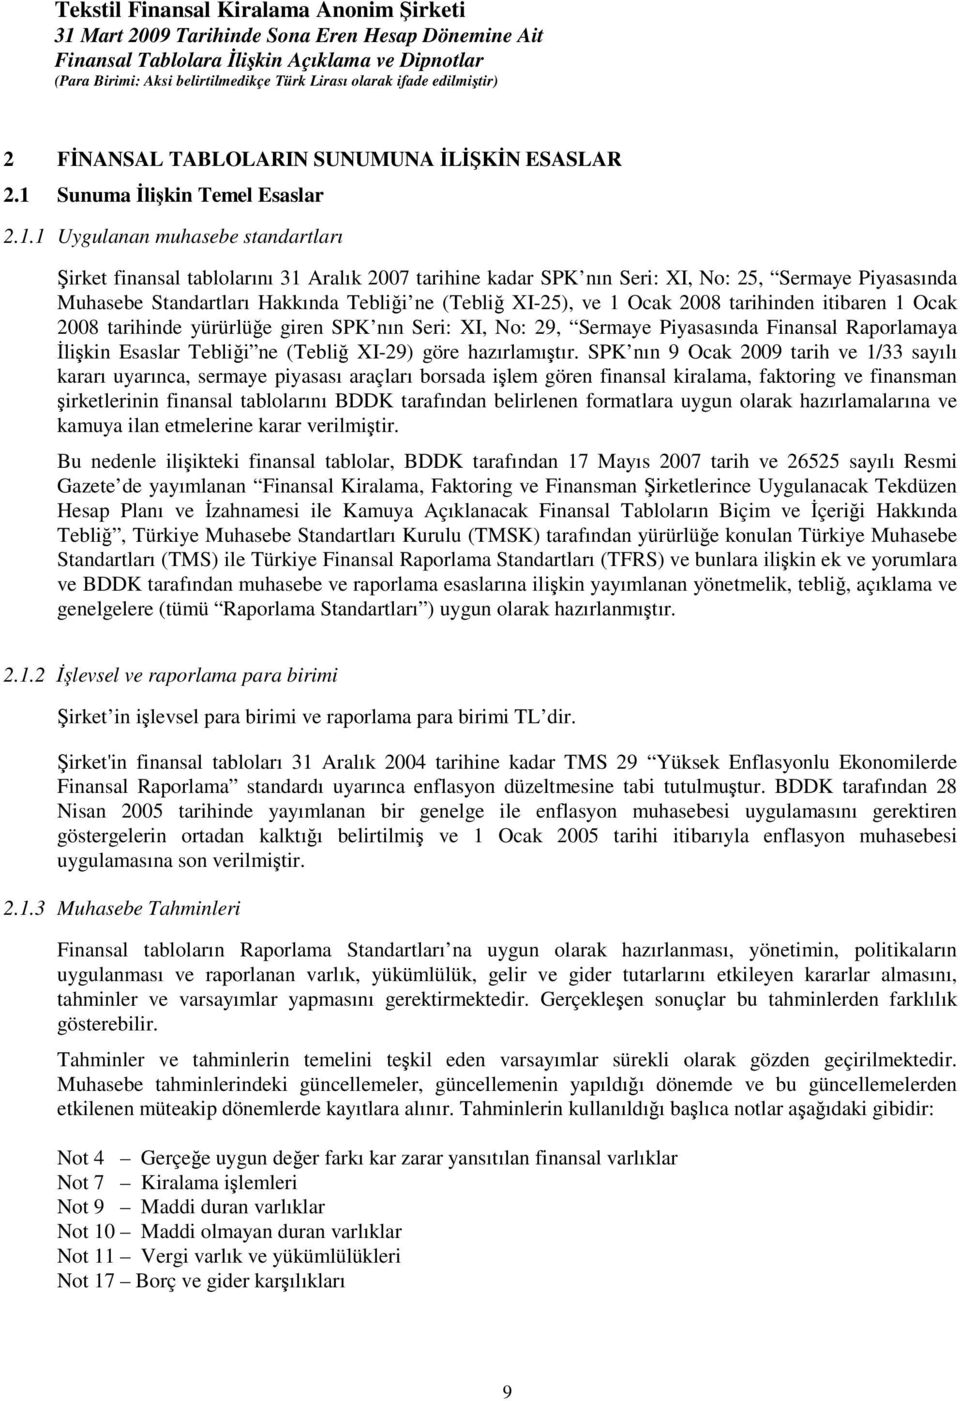 1 Uygulanan muhasebe standartları irket finansal tablolarını 31 Aralık 2007 tarihine kadar SPK nın Seri: XI, No: 25, Sermaye Piyasasında Muhasebe Standartları Hakkında Teblii ne (Tebli XI-25), ve 1